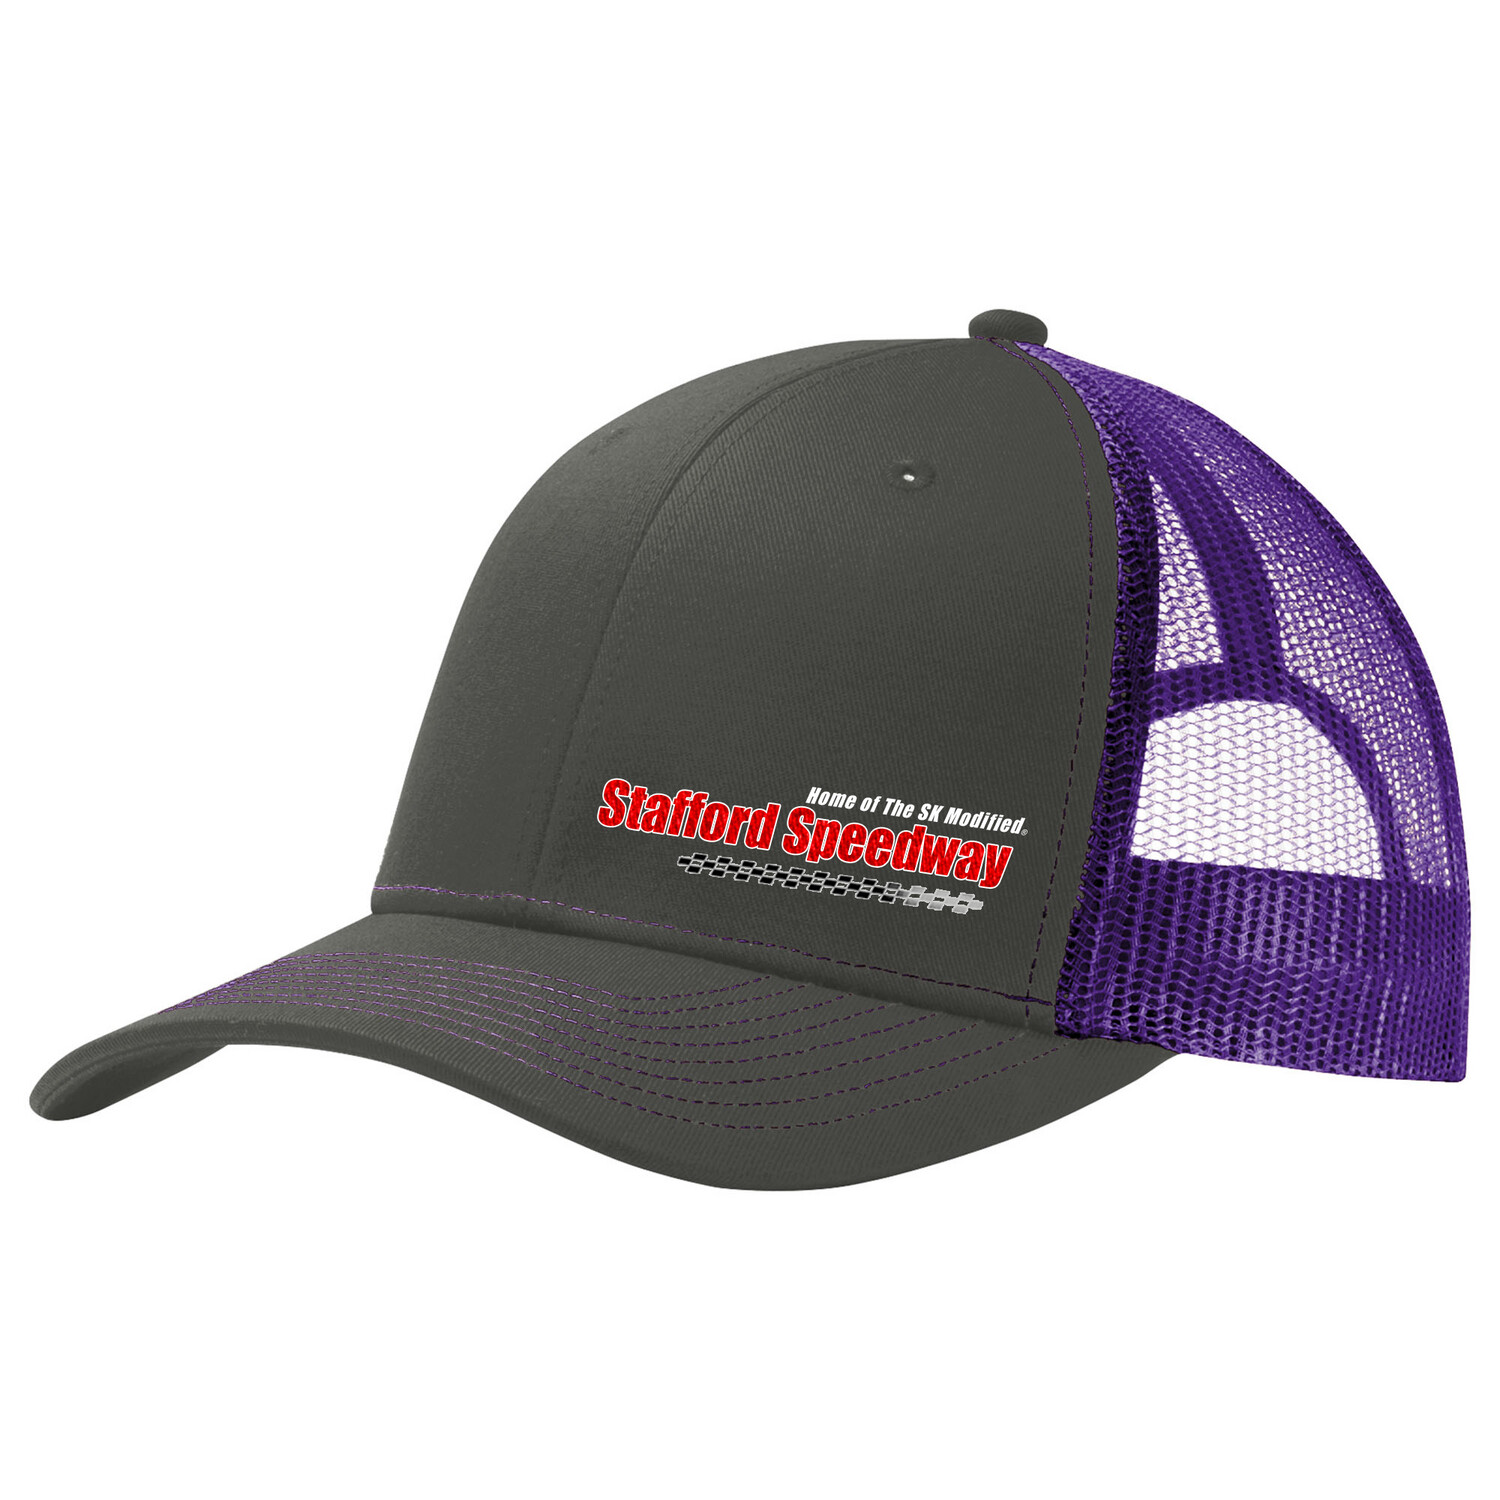 Steel Grey Purple Stafford Speedway Mesh Hat